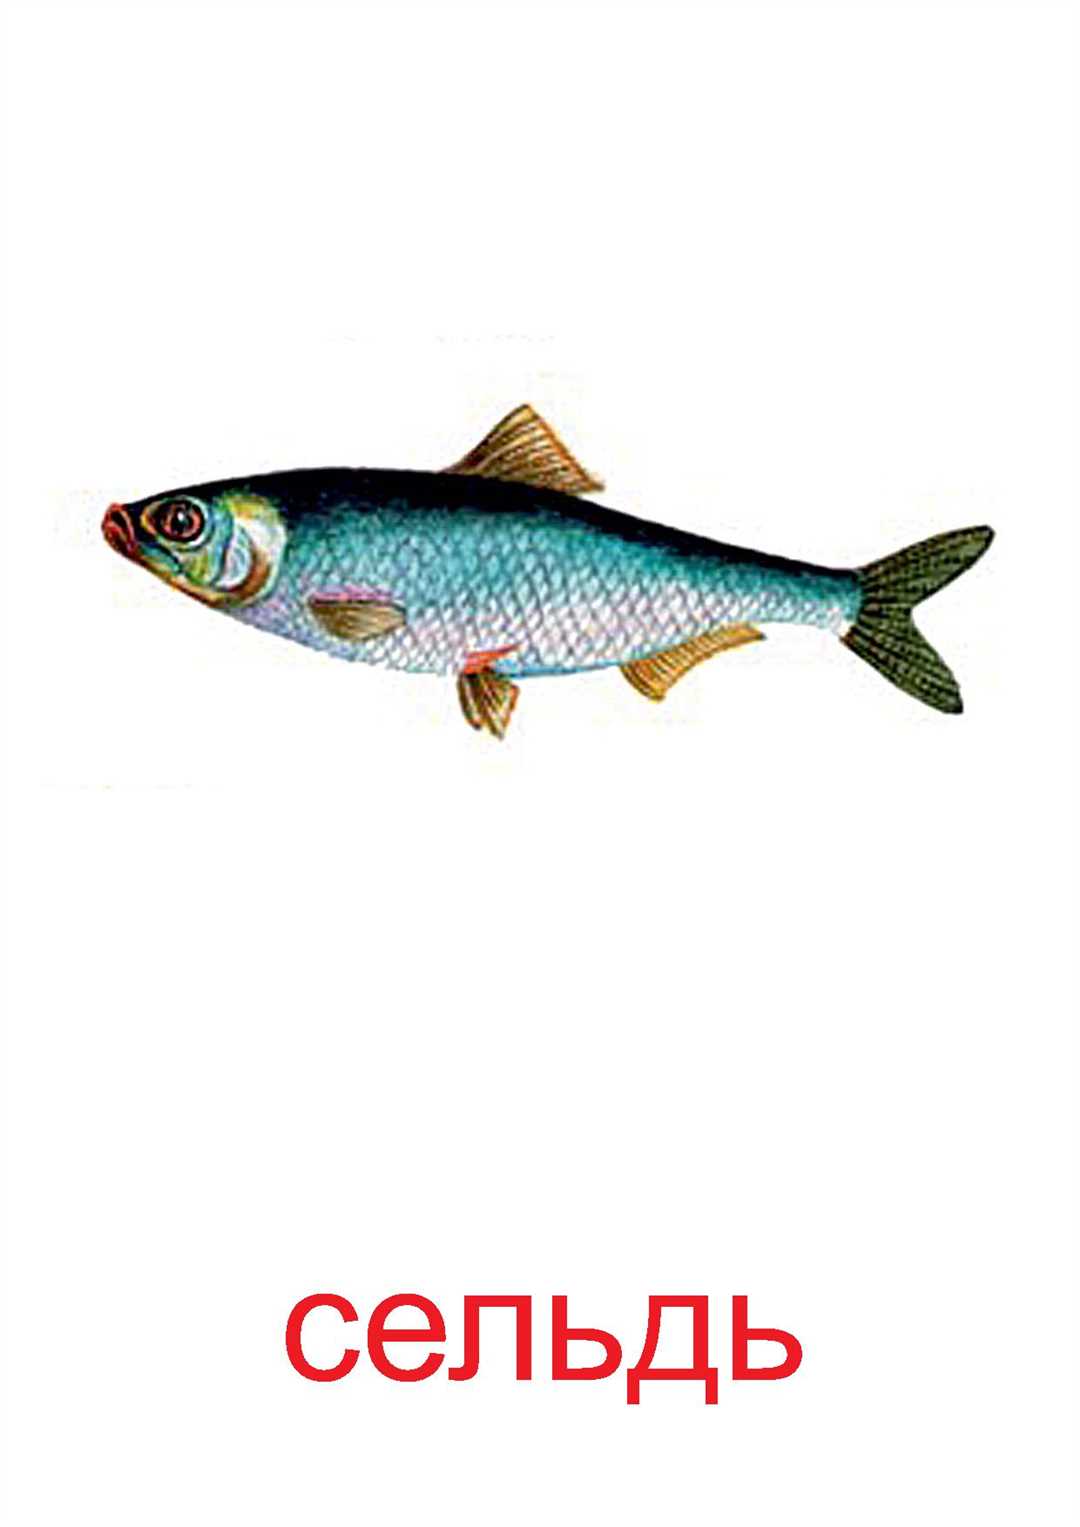 2. Разнообразие рыбы в рационе